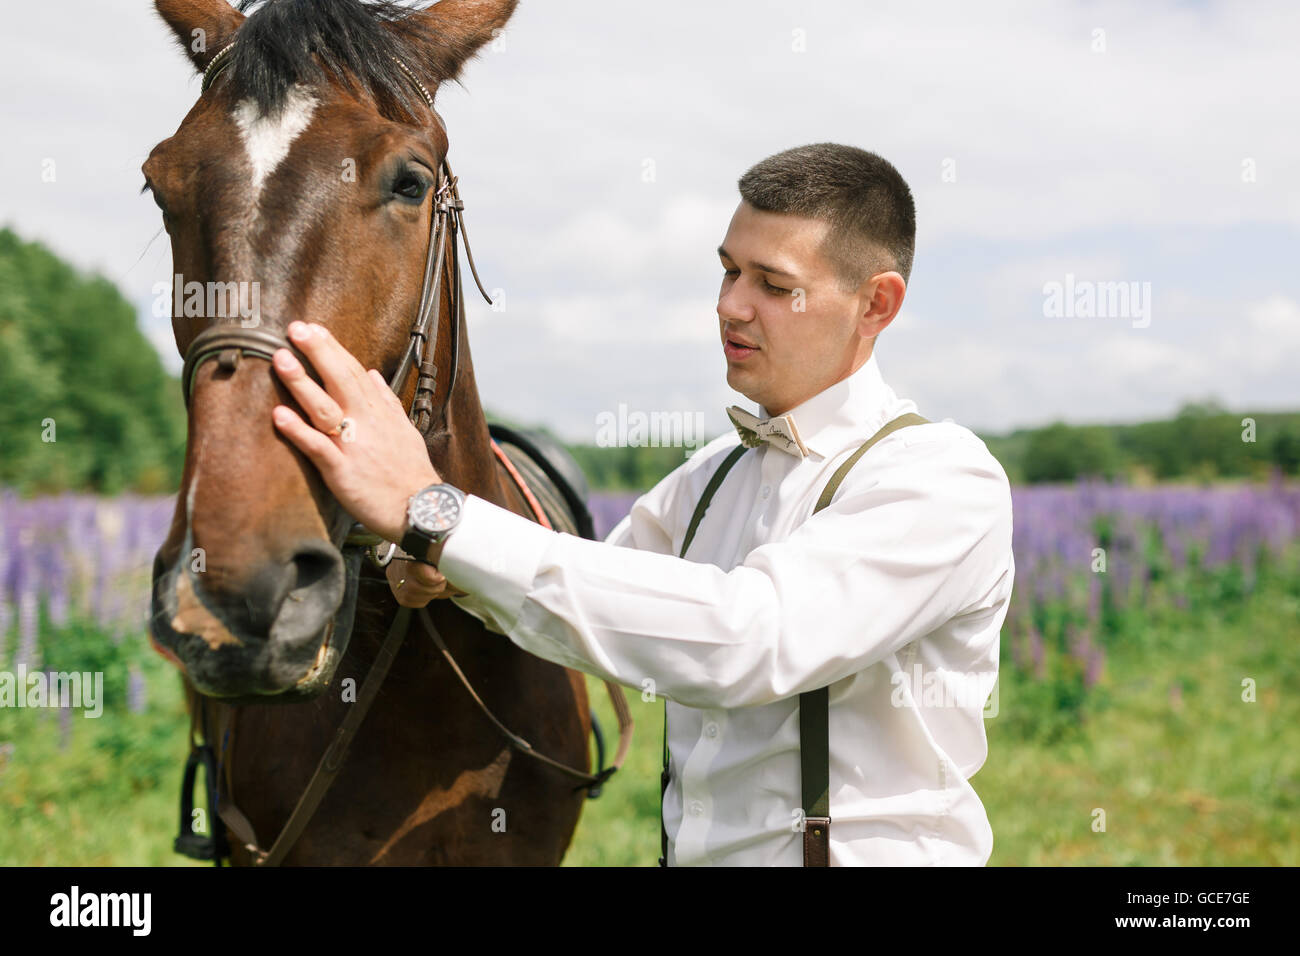 Der Bräutigam stehend mit Pferd auf einem Feld von lupine Stockfoto